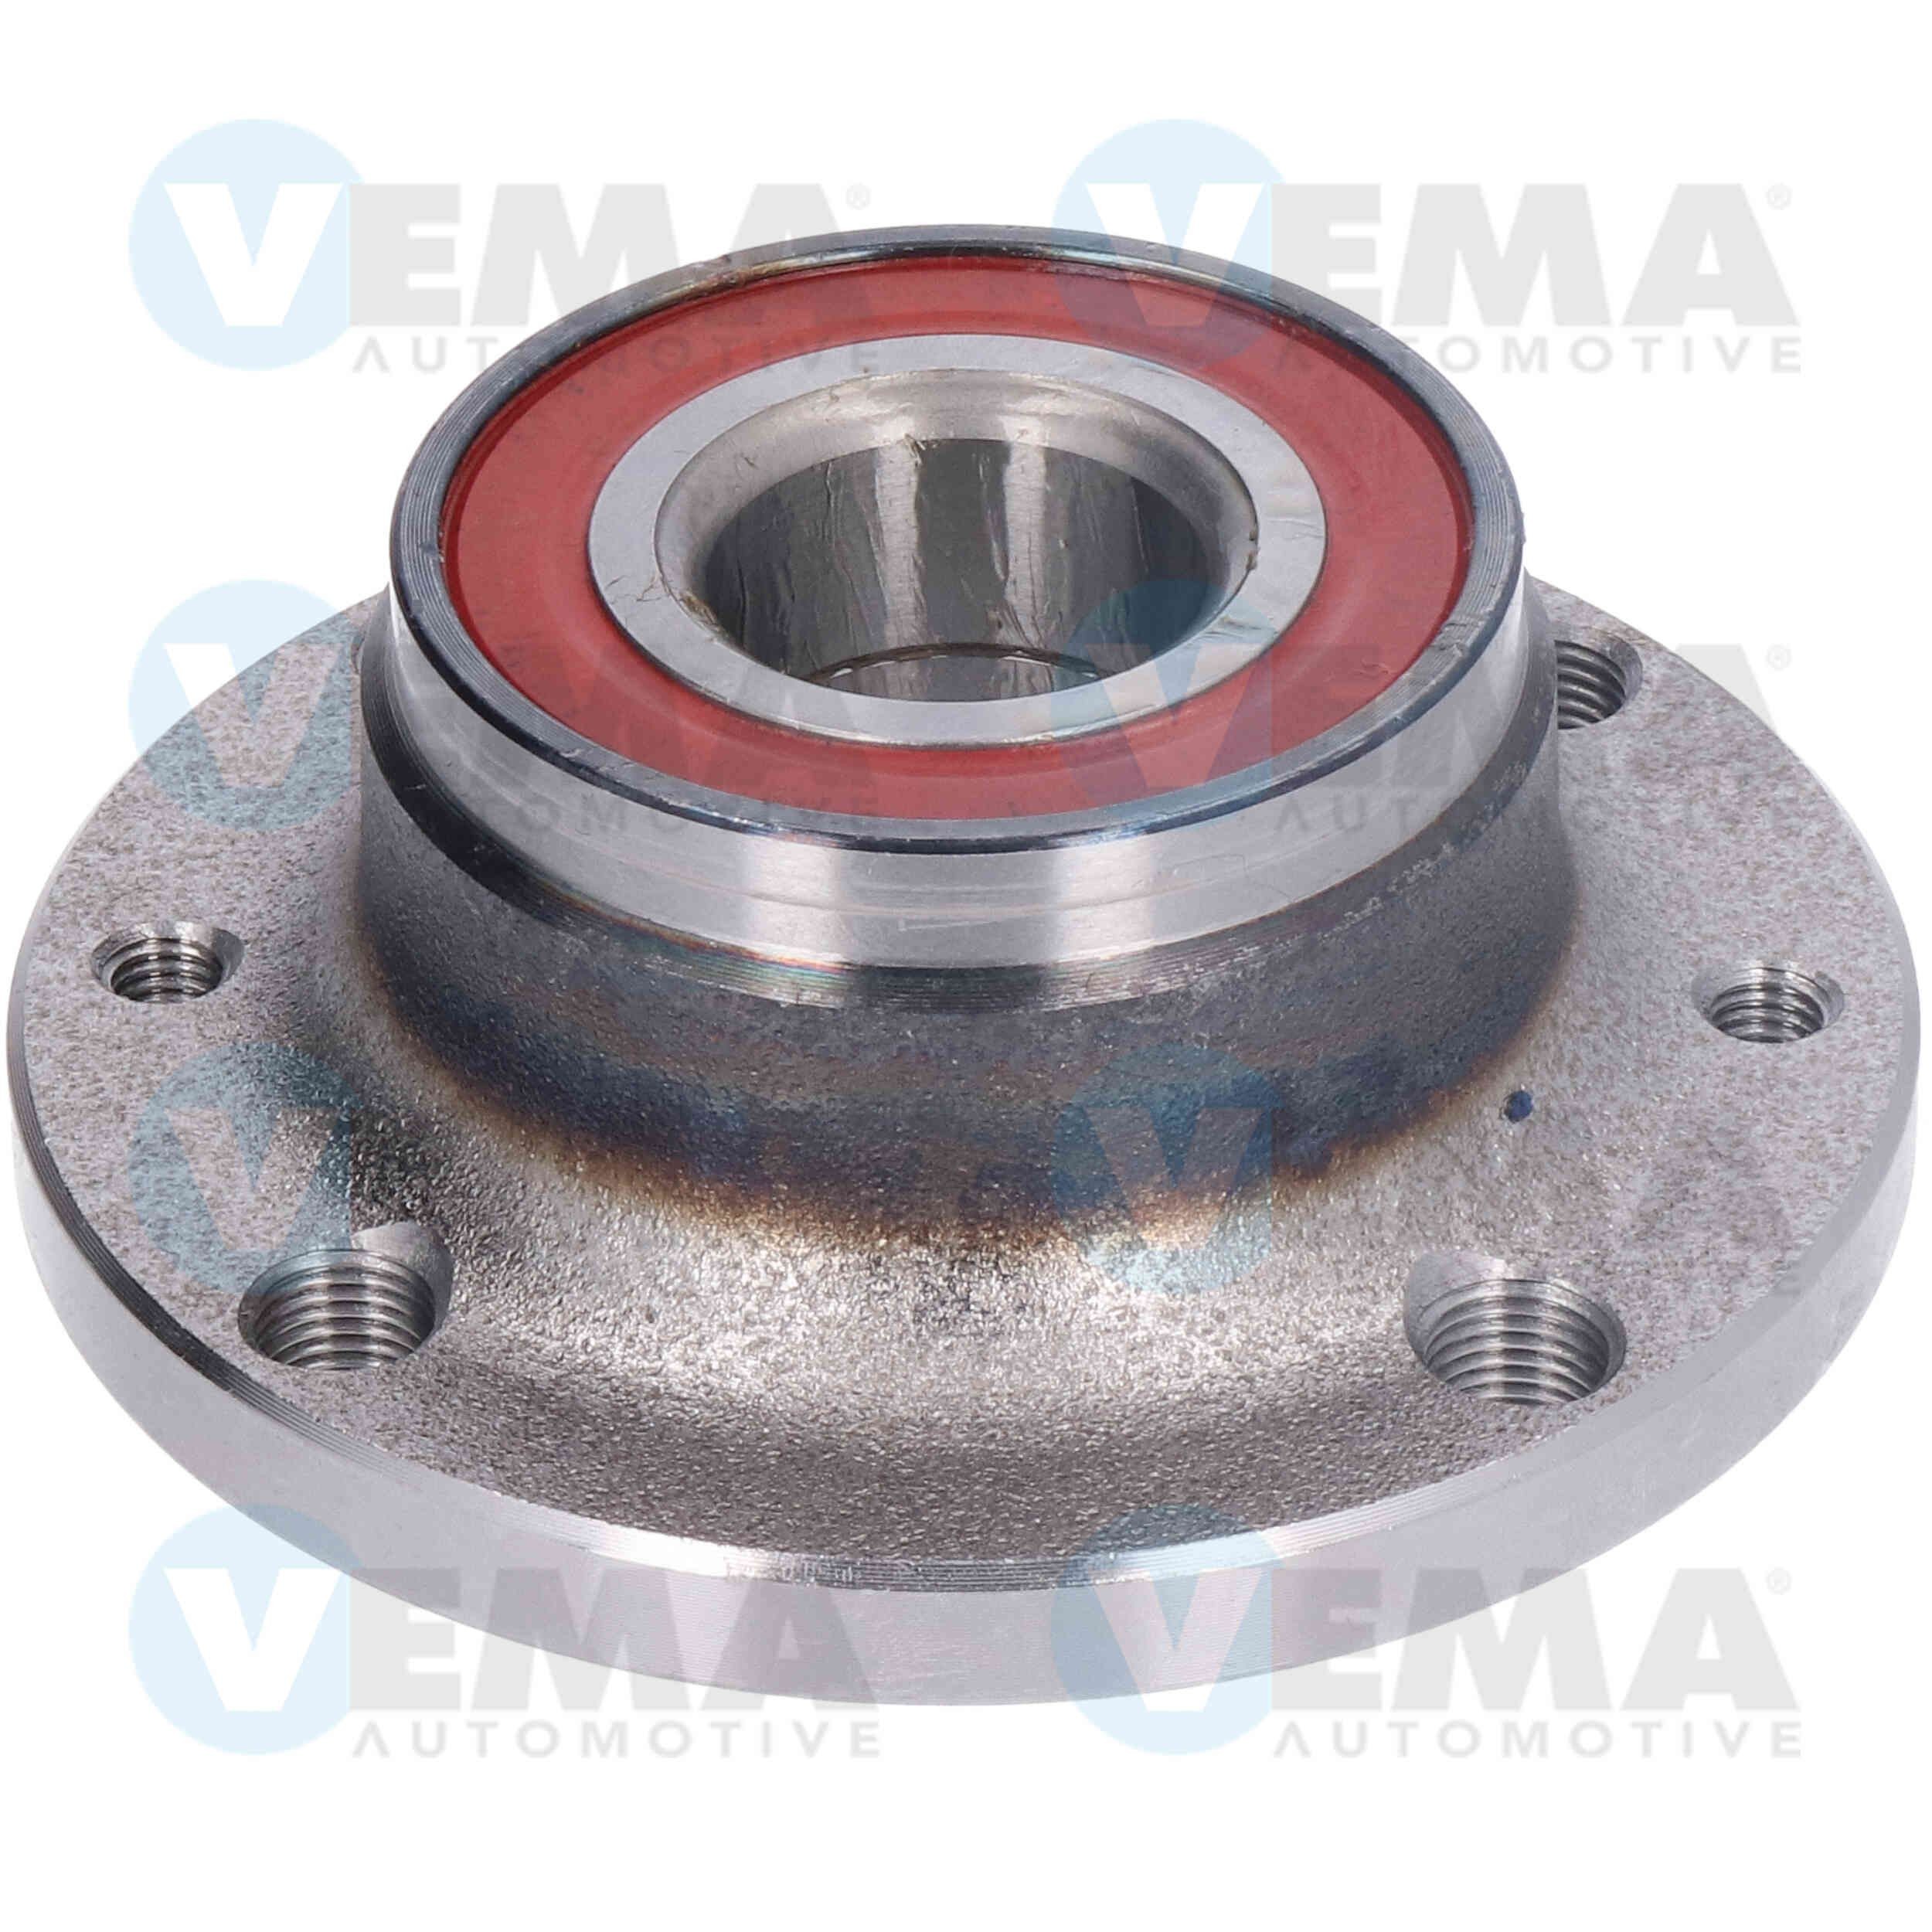 VEMA Hub bearing 16409